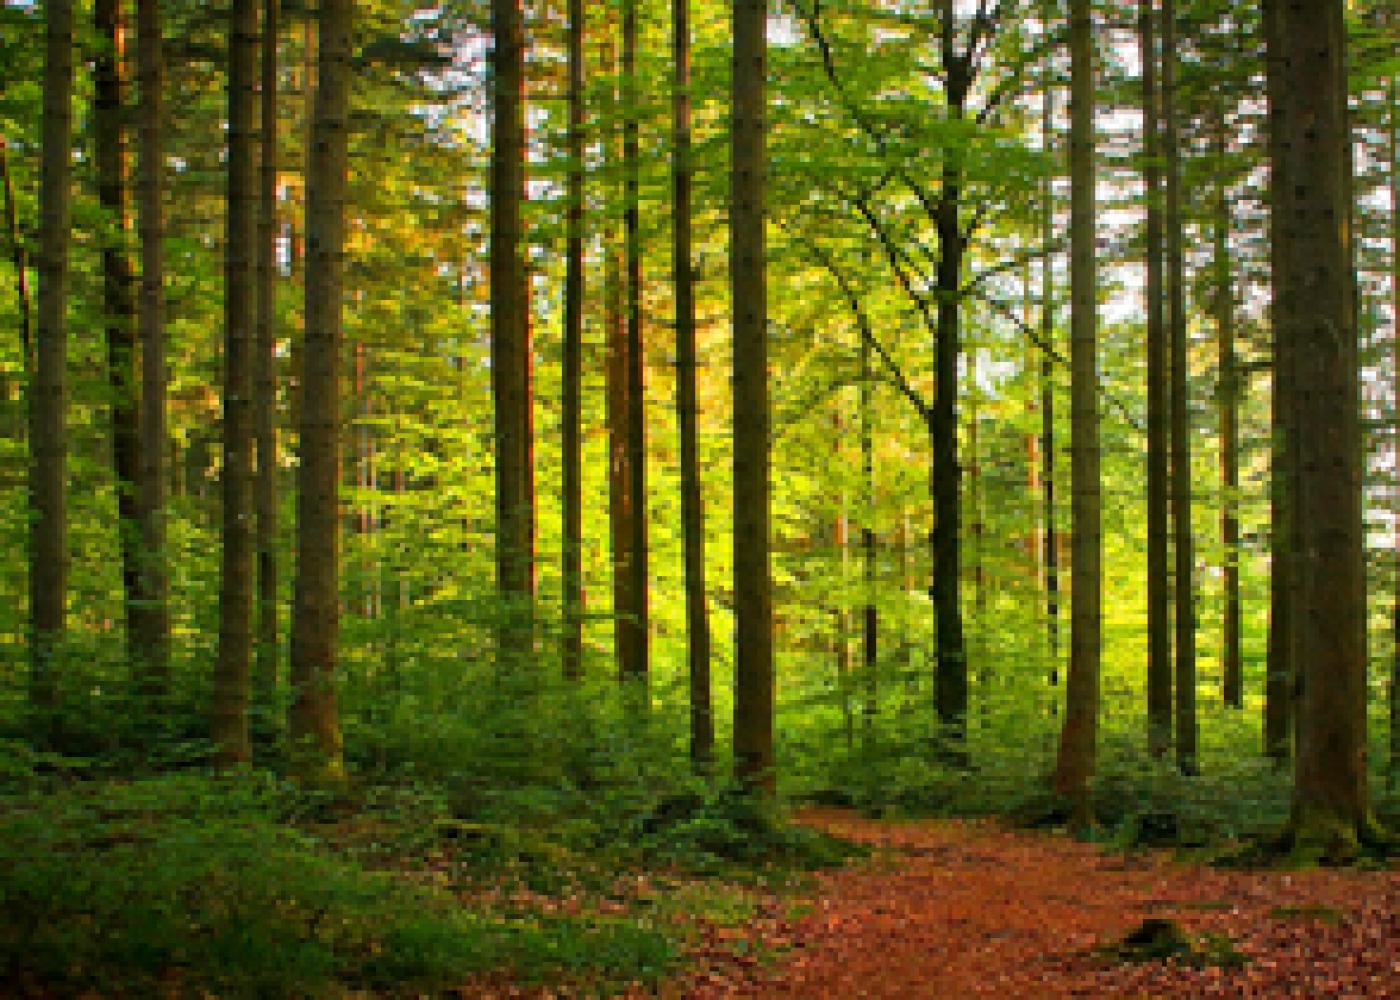 Publieksagressie in bos en natuur? Digitaal Werkboek VBNE helpt